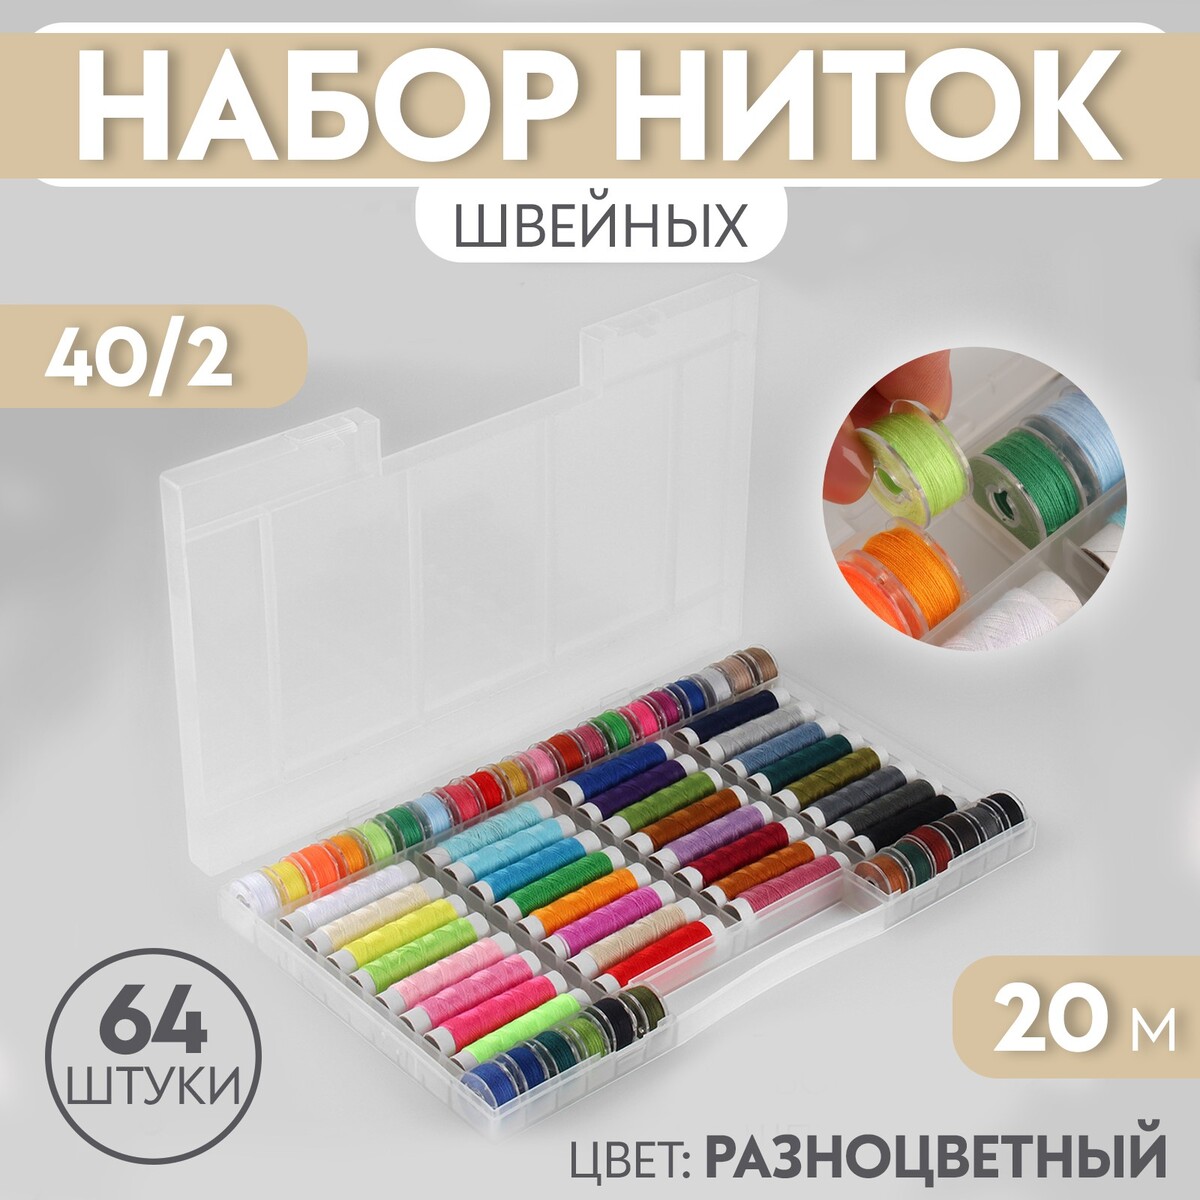 Набор швейных ниток, 40/2, 20 м, 64 шт, в органайзере, цвет разноцветный набор пластиковых кнопок d 12 мм 240 шт в органайзере 19 × 13 2 × 2 2 см